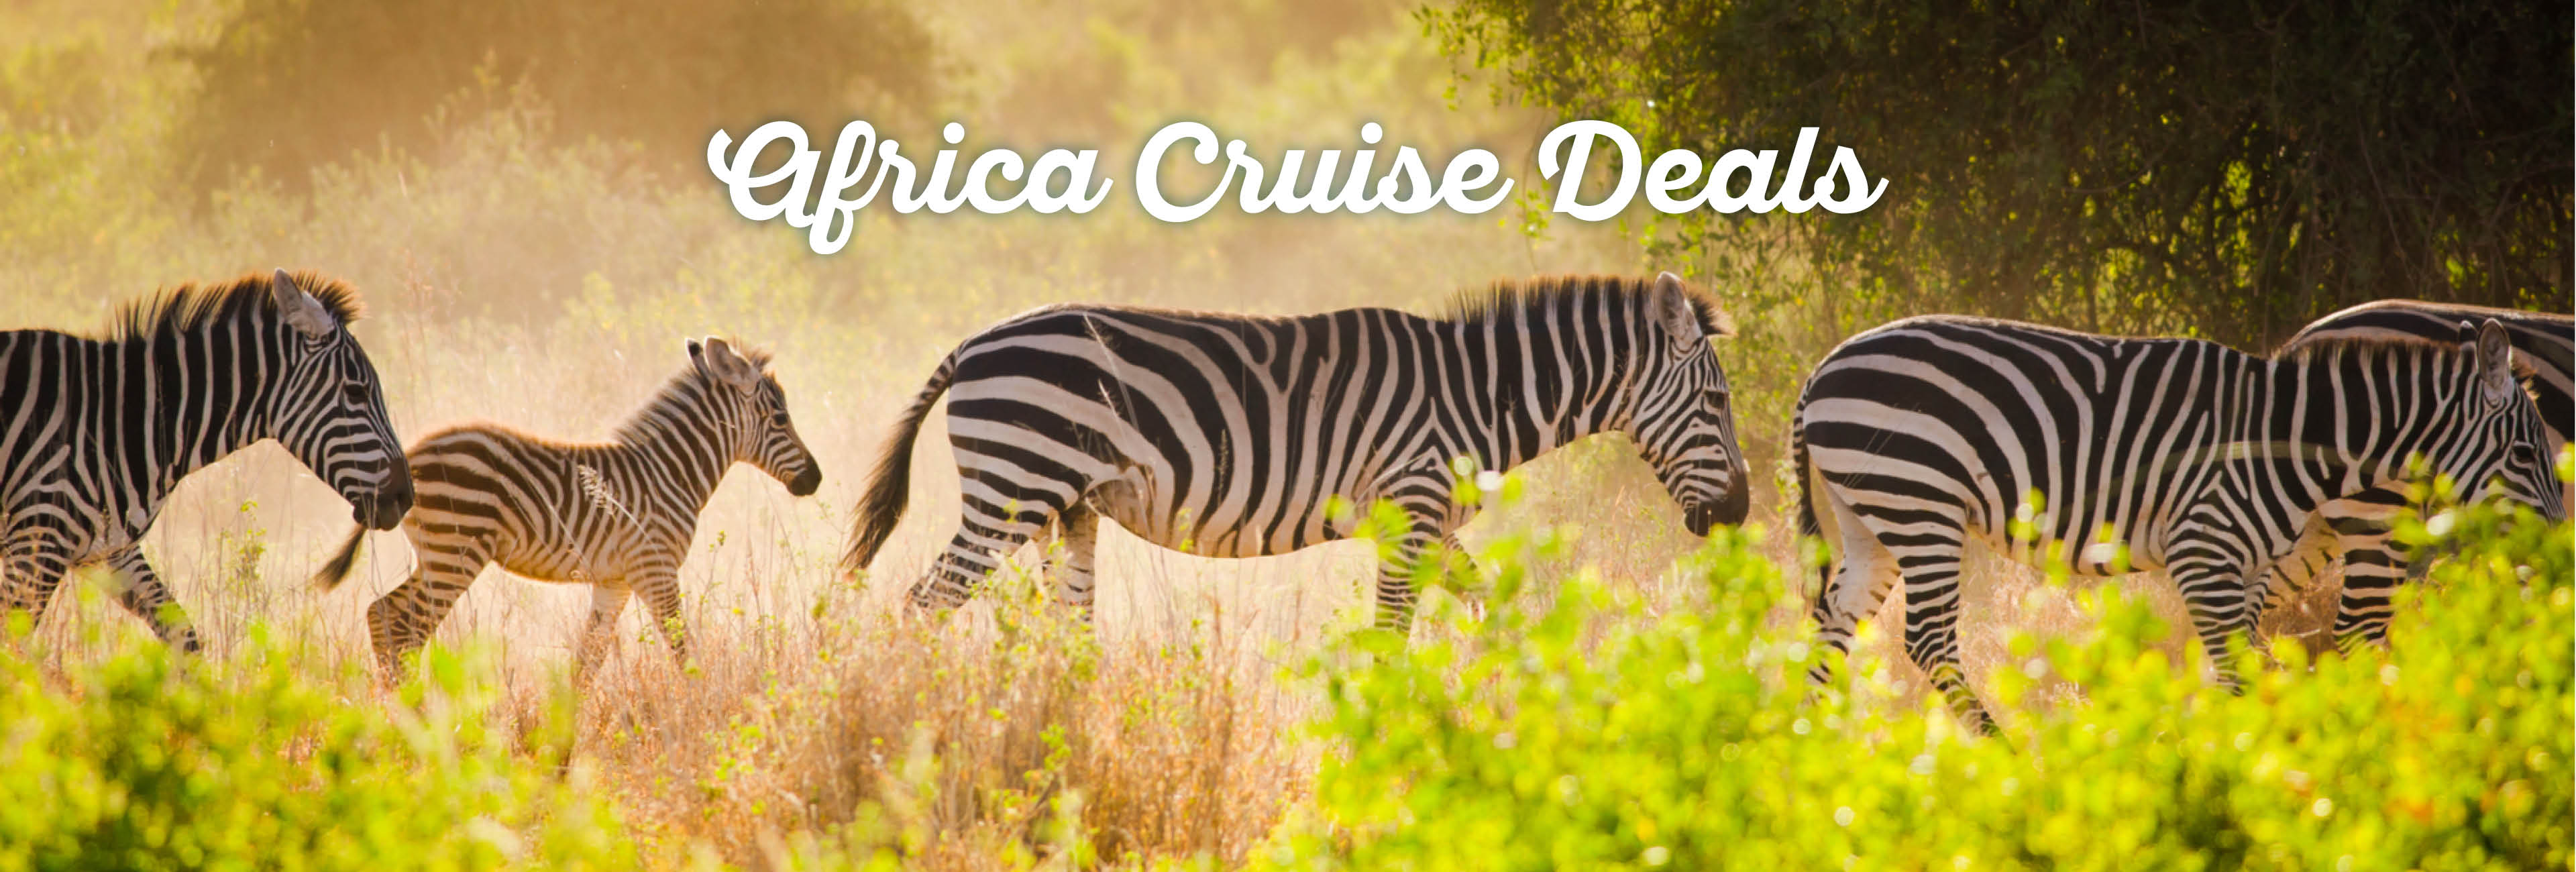 africa-cruise-deals1.jpg